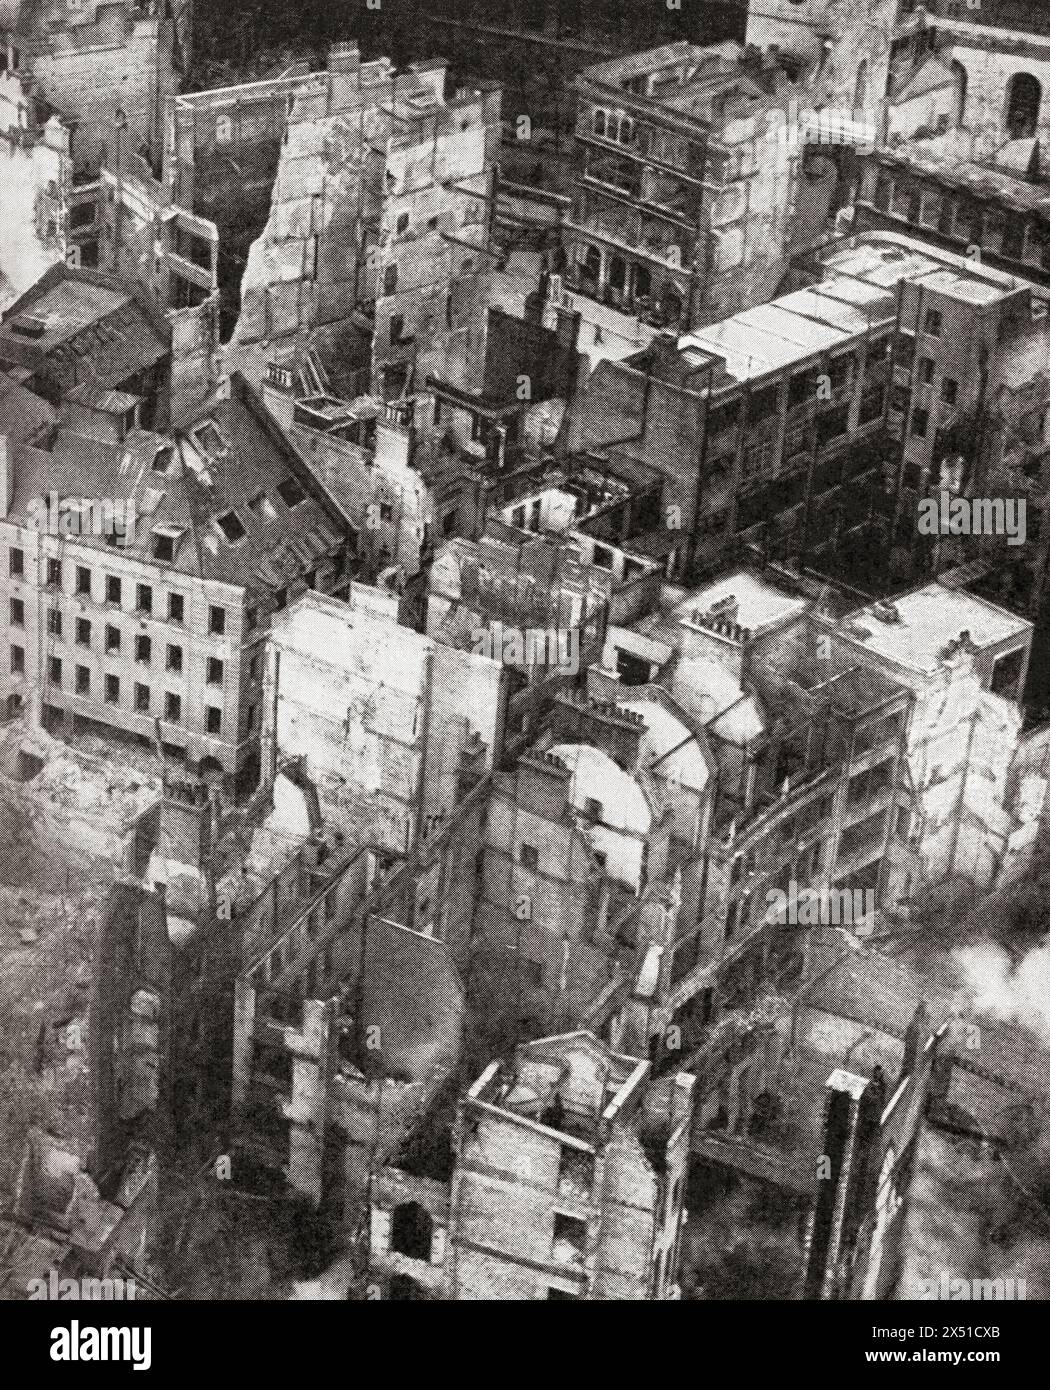 Die Ruinen des Paternoster Square, London, am Morgen nach einem schweren Bombenangriff, 30. Dezember 1940. Aus dem Krieg in Bildern, 2. Jahr. Stockfoto